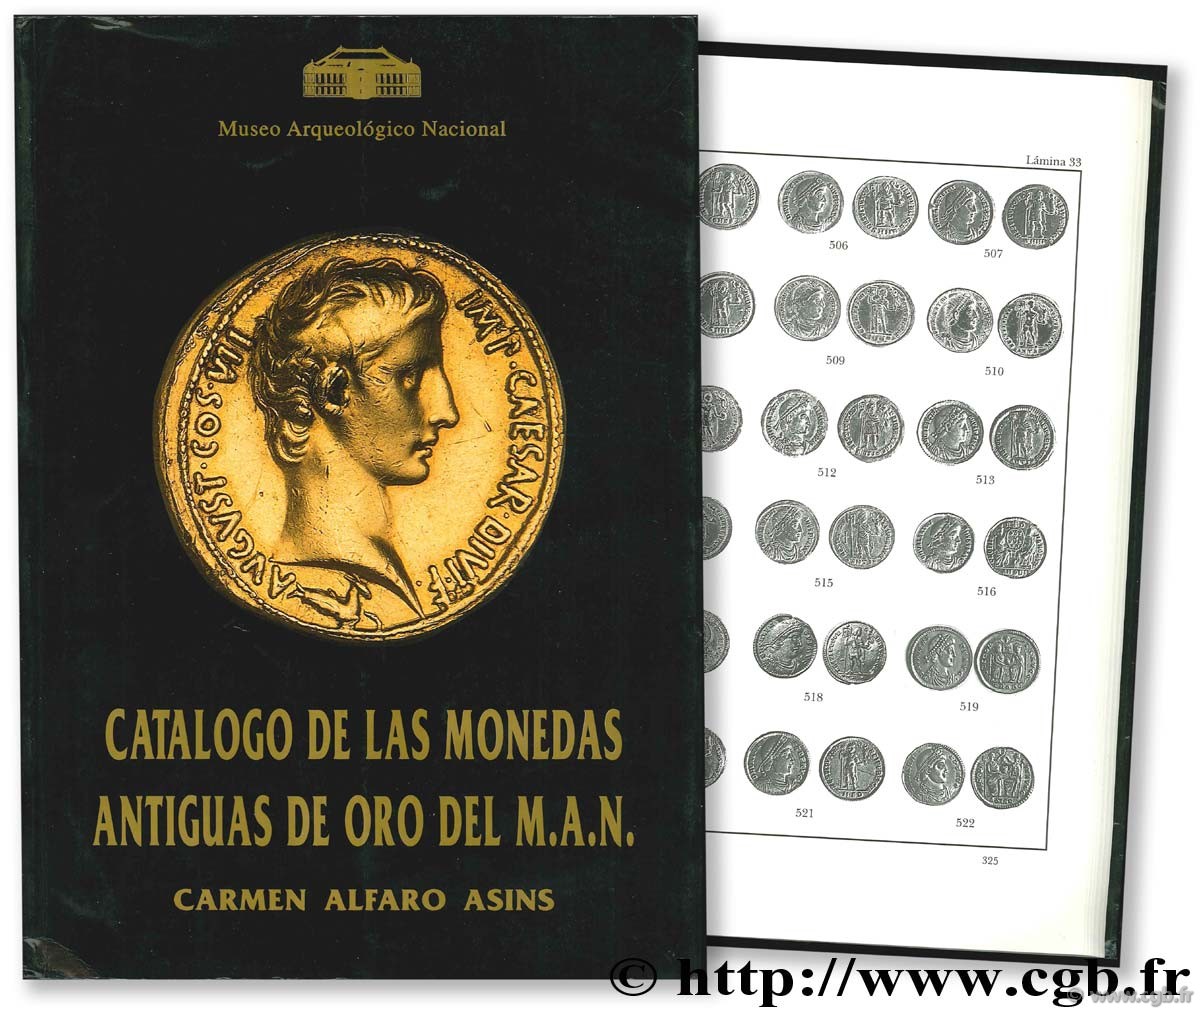 Catalogo de las monedas antiguas de oro del M. A. N. (Museo Arqueologico Nacional. ALFARO ASINS C.